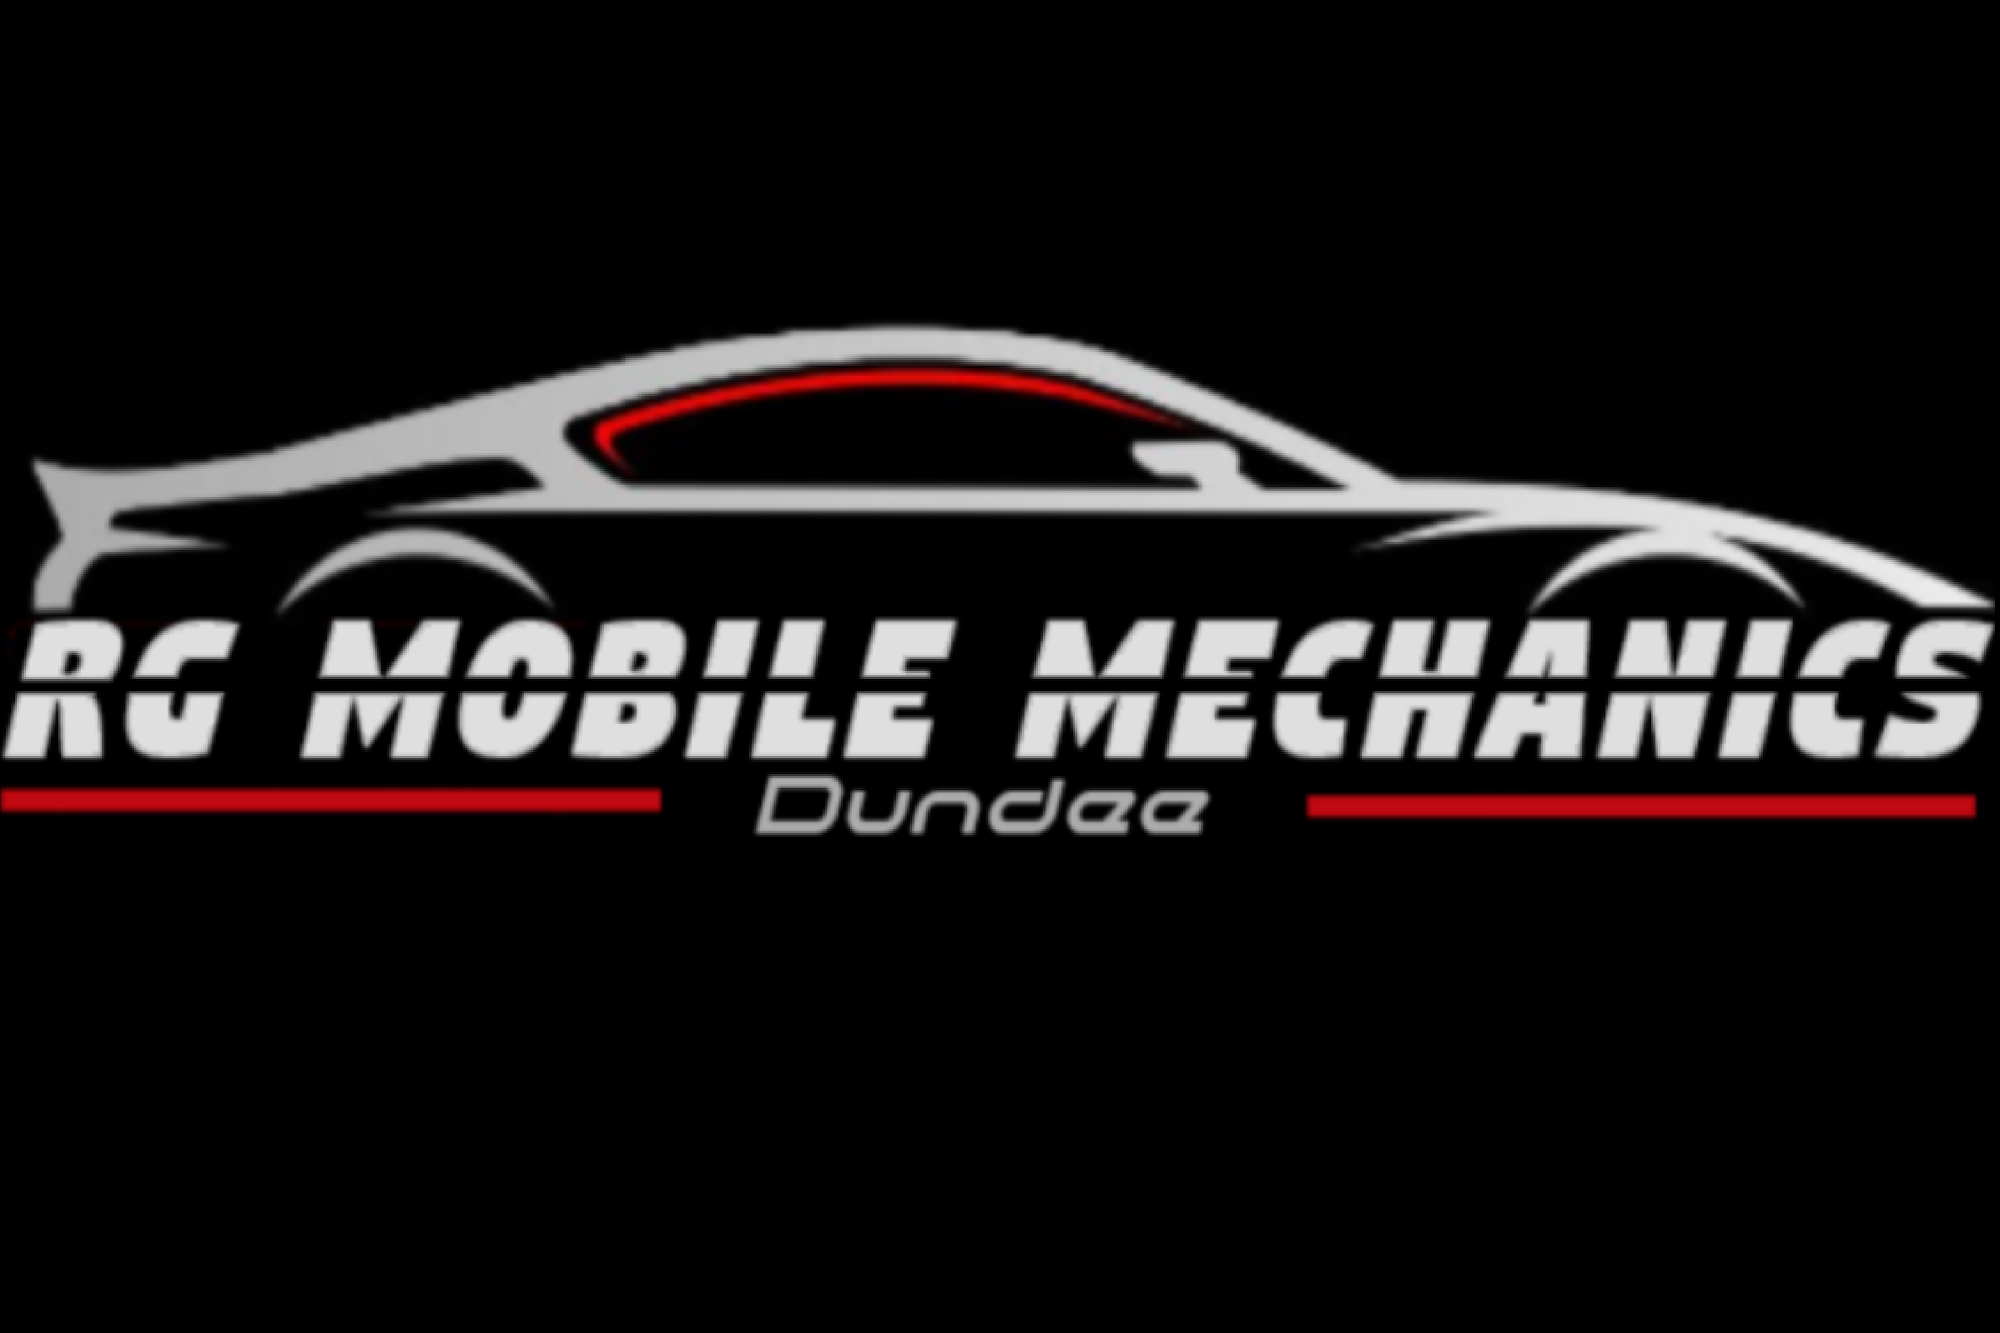 RG Mobile Mechanics - Dundee